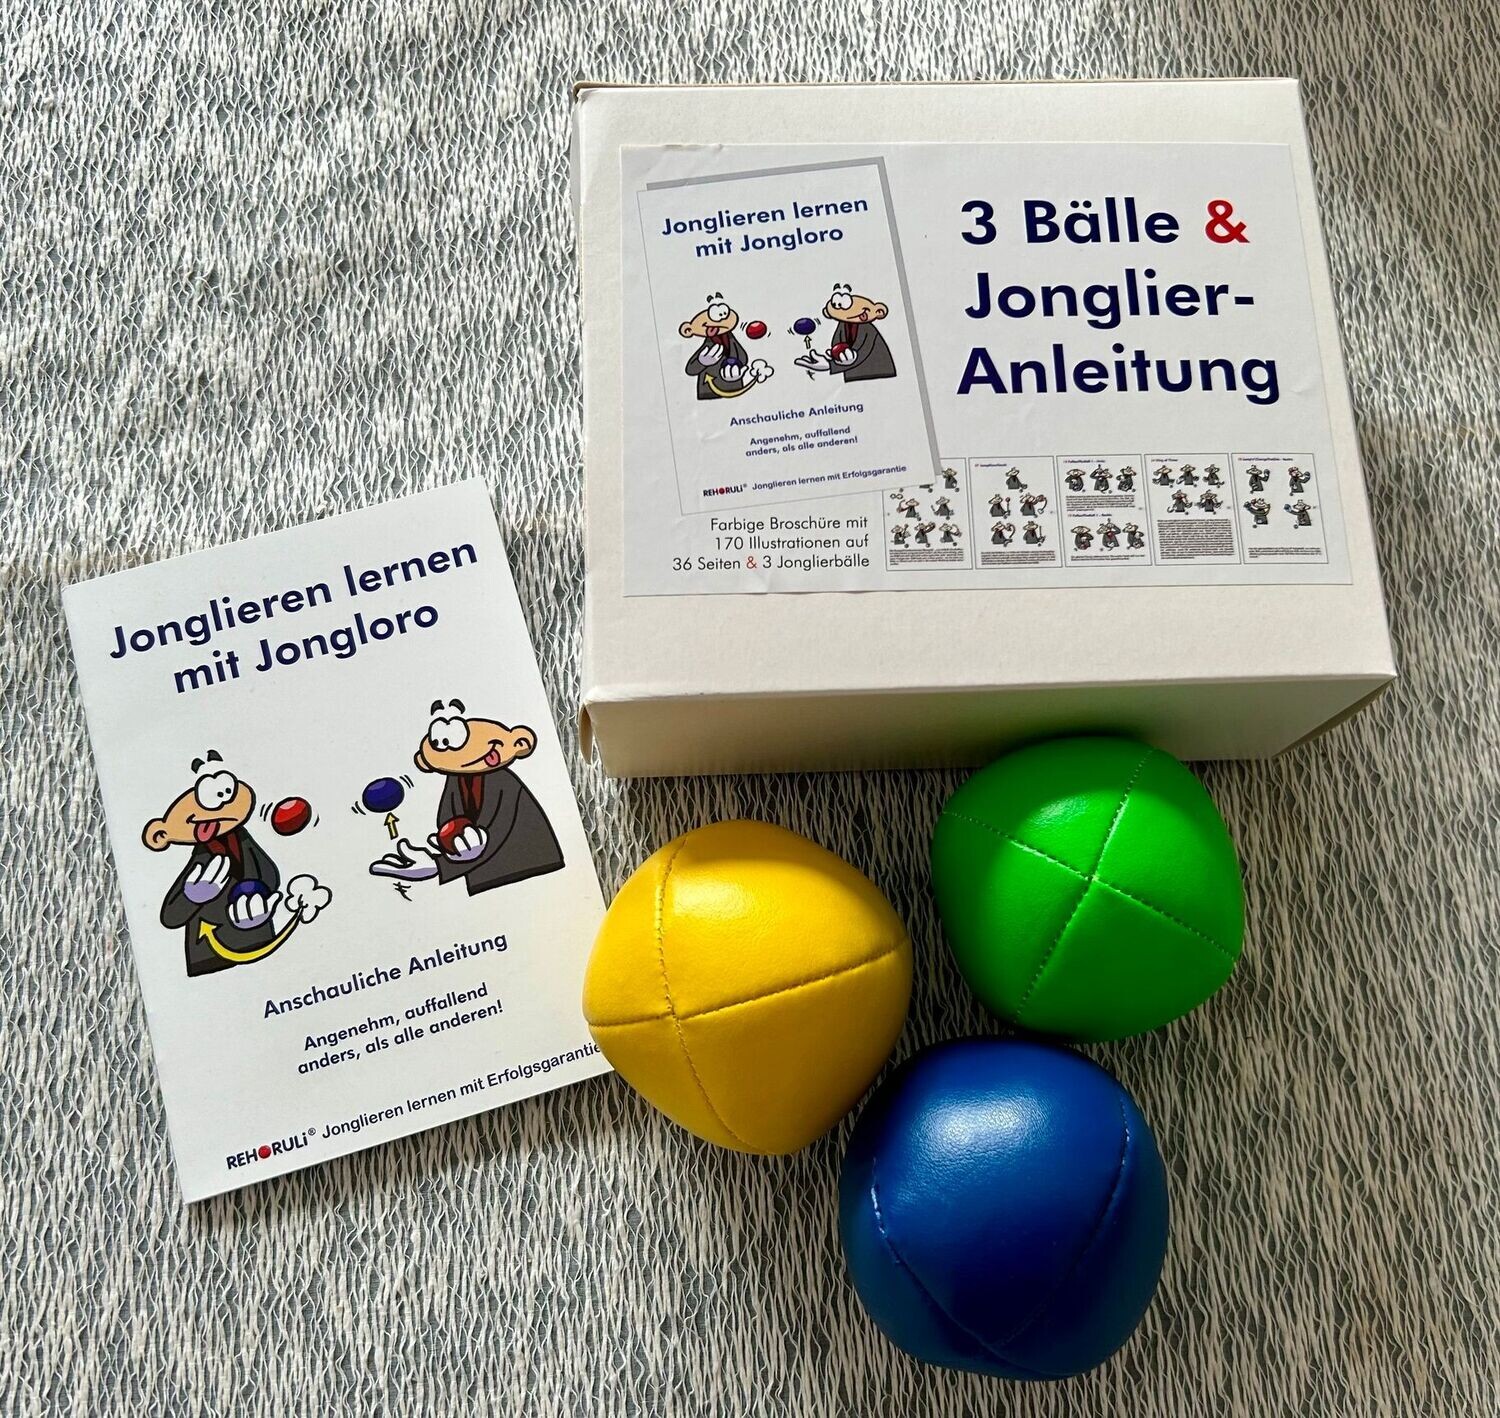 Jonglierball-Set L - Ballfarben: gelb, grün, blau mit Anleitung in Geschenkebox - VERSANDKOSTENFREI innerhalb Deutschlands